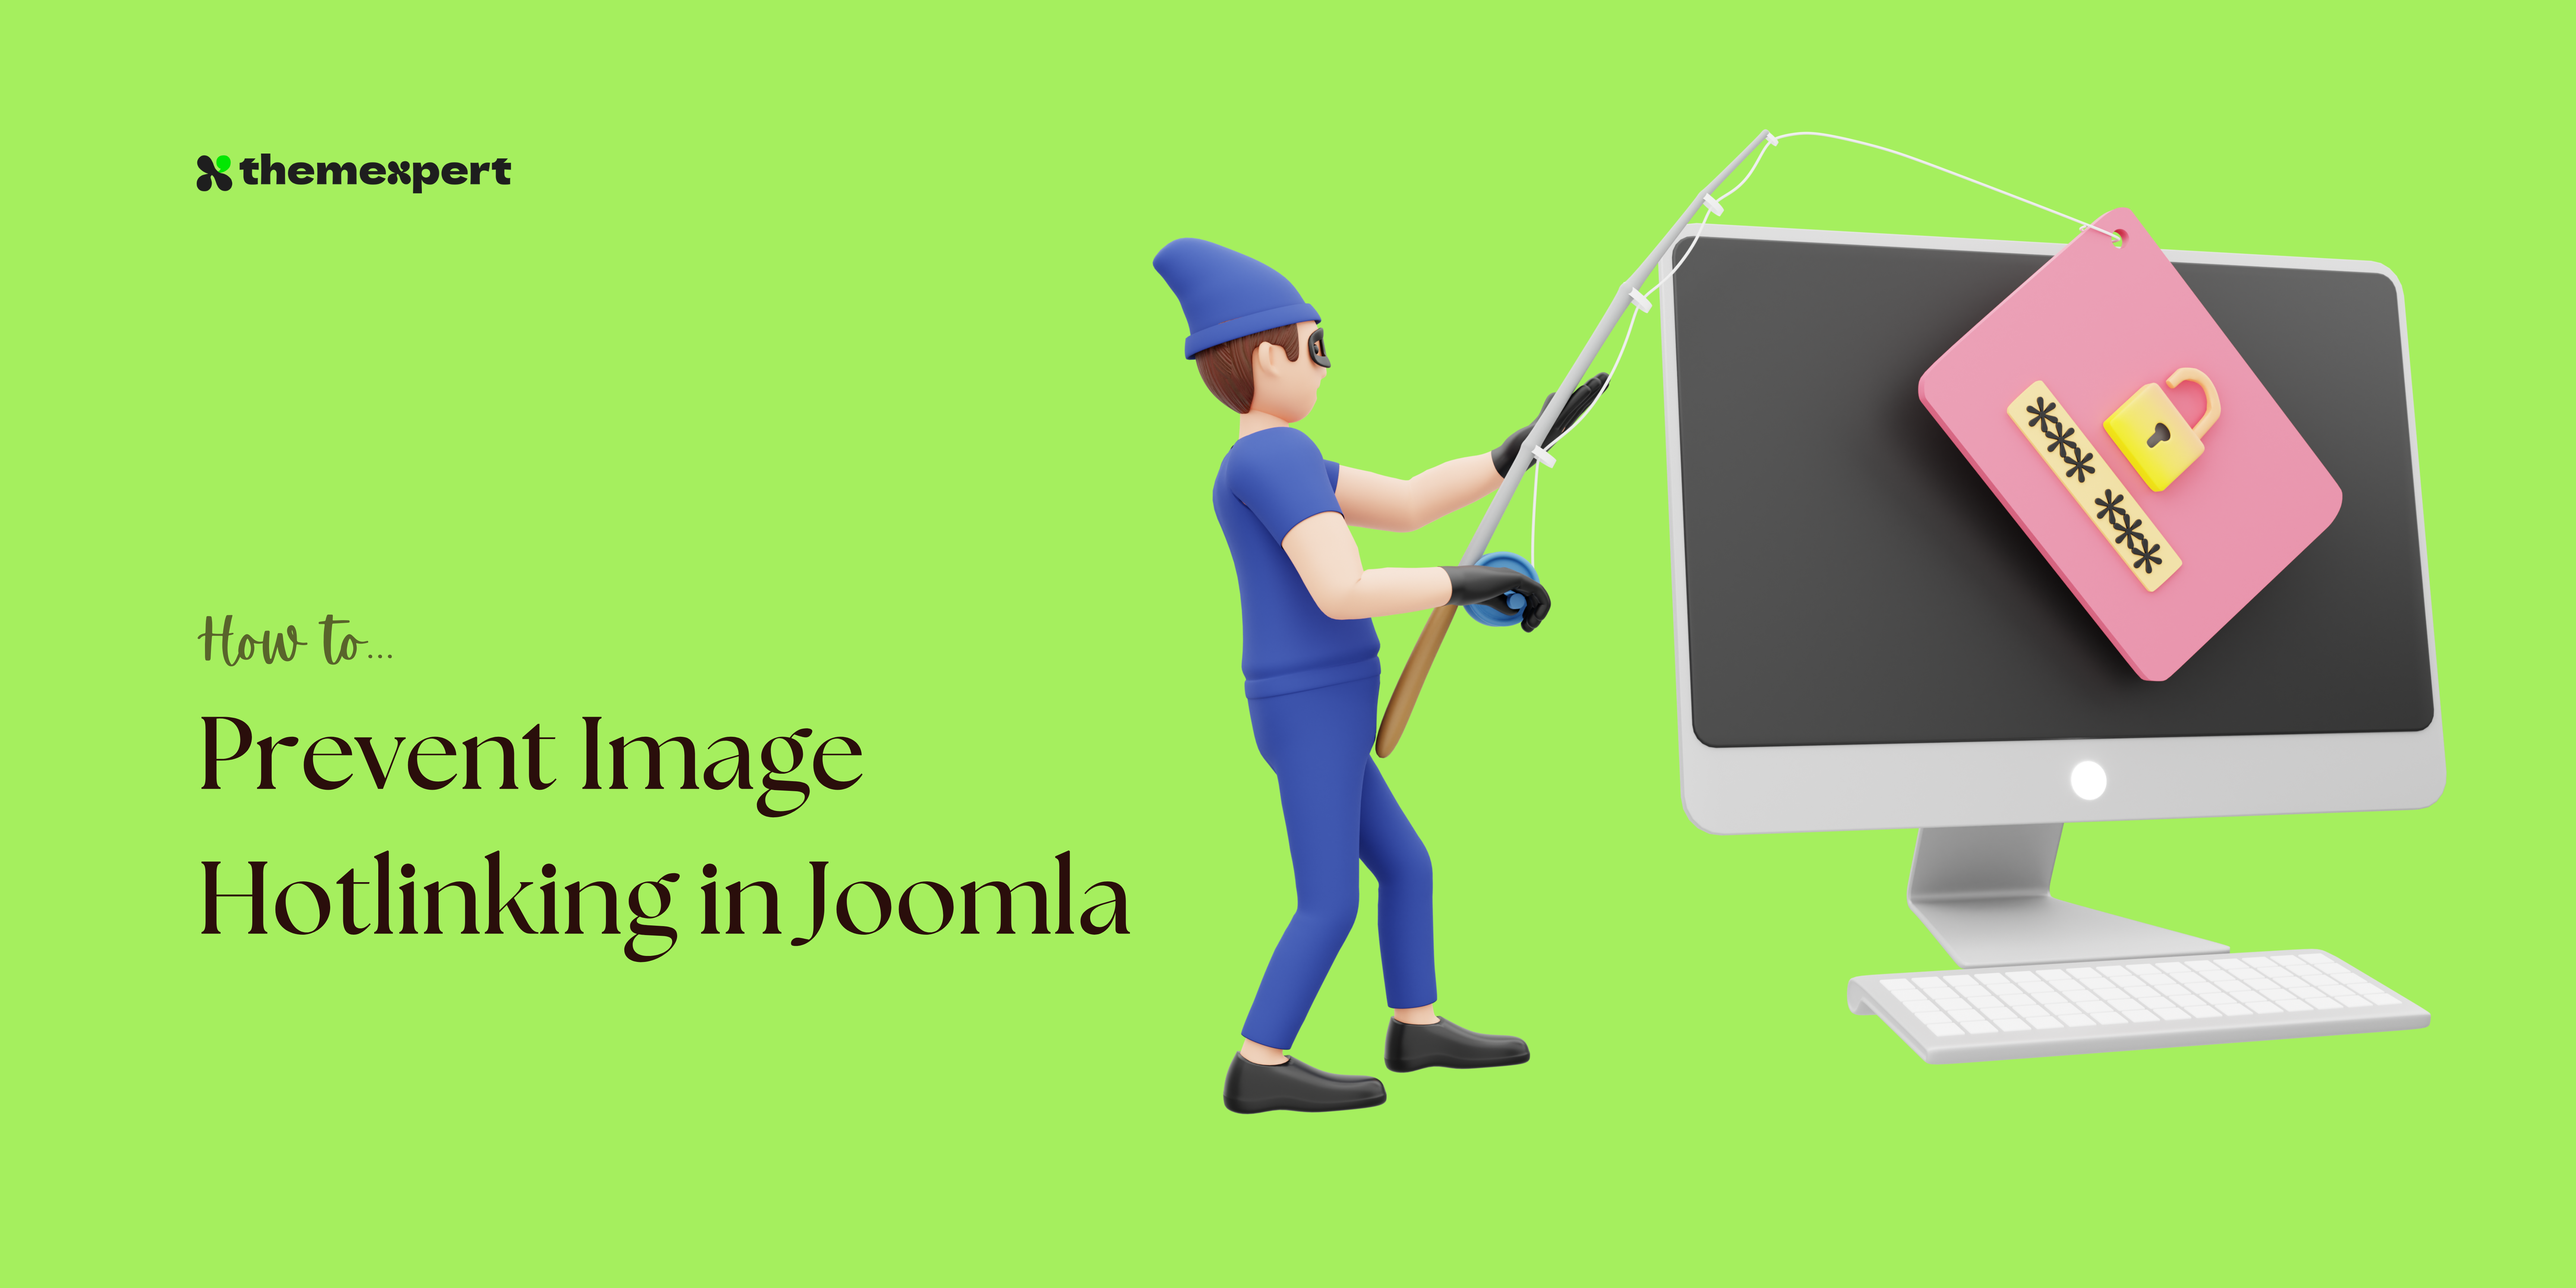 How to Prevent Image Hotlinking in Joomla (5 ways)